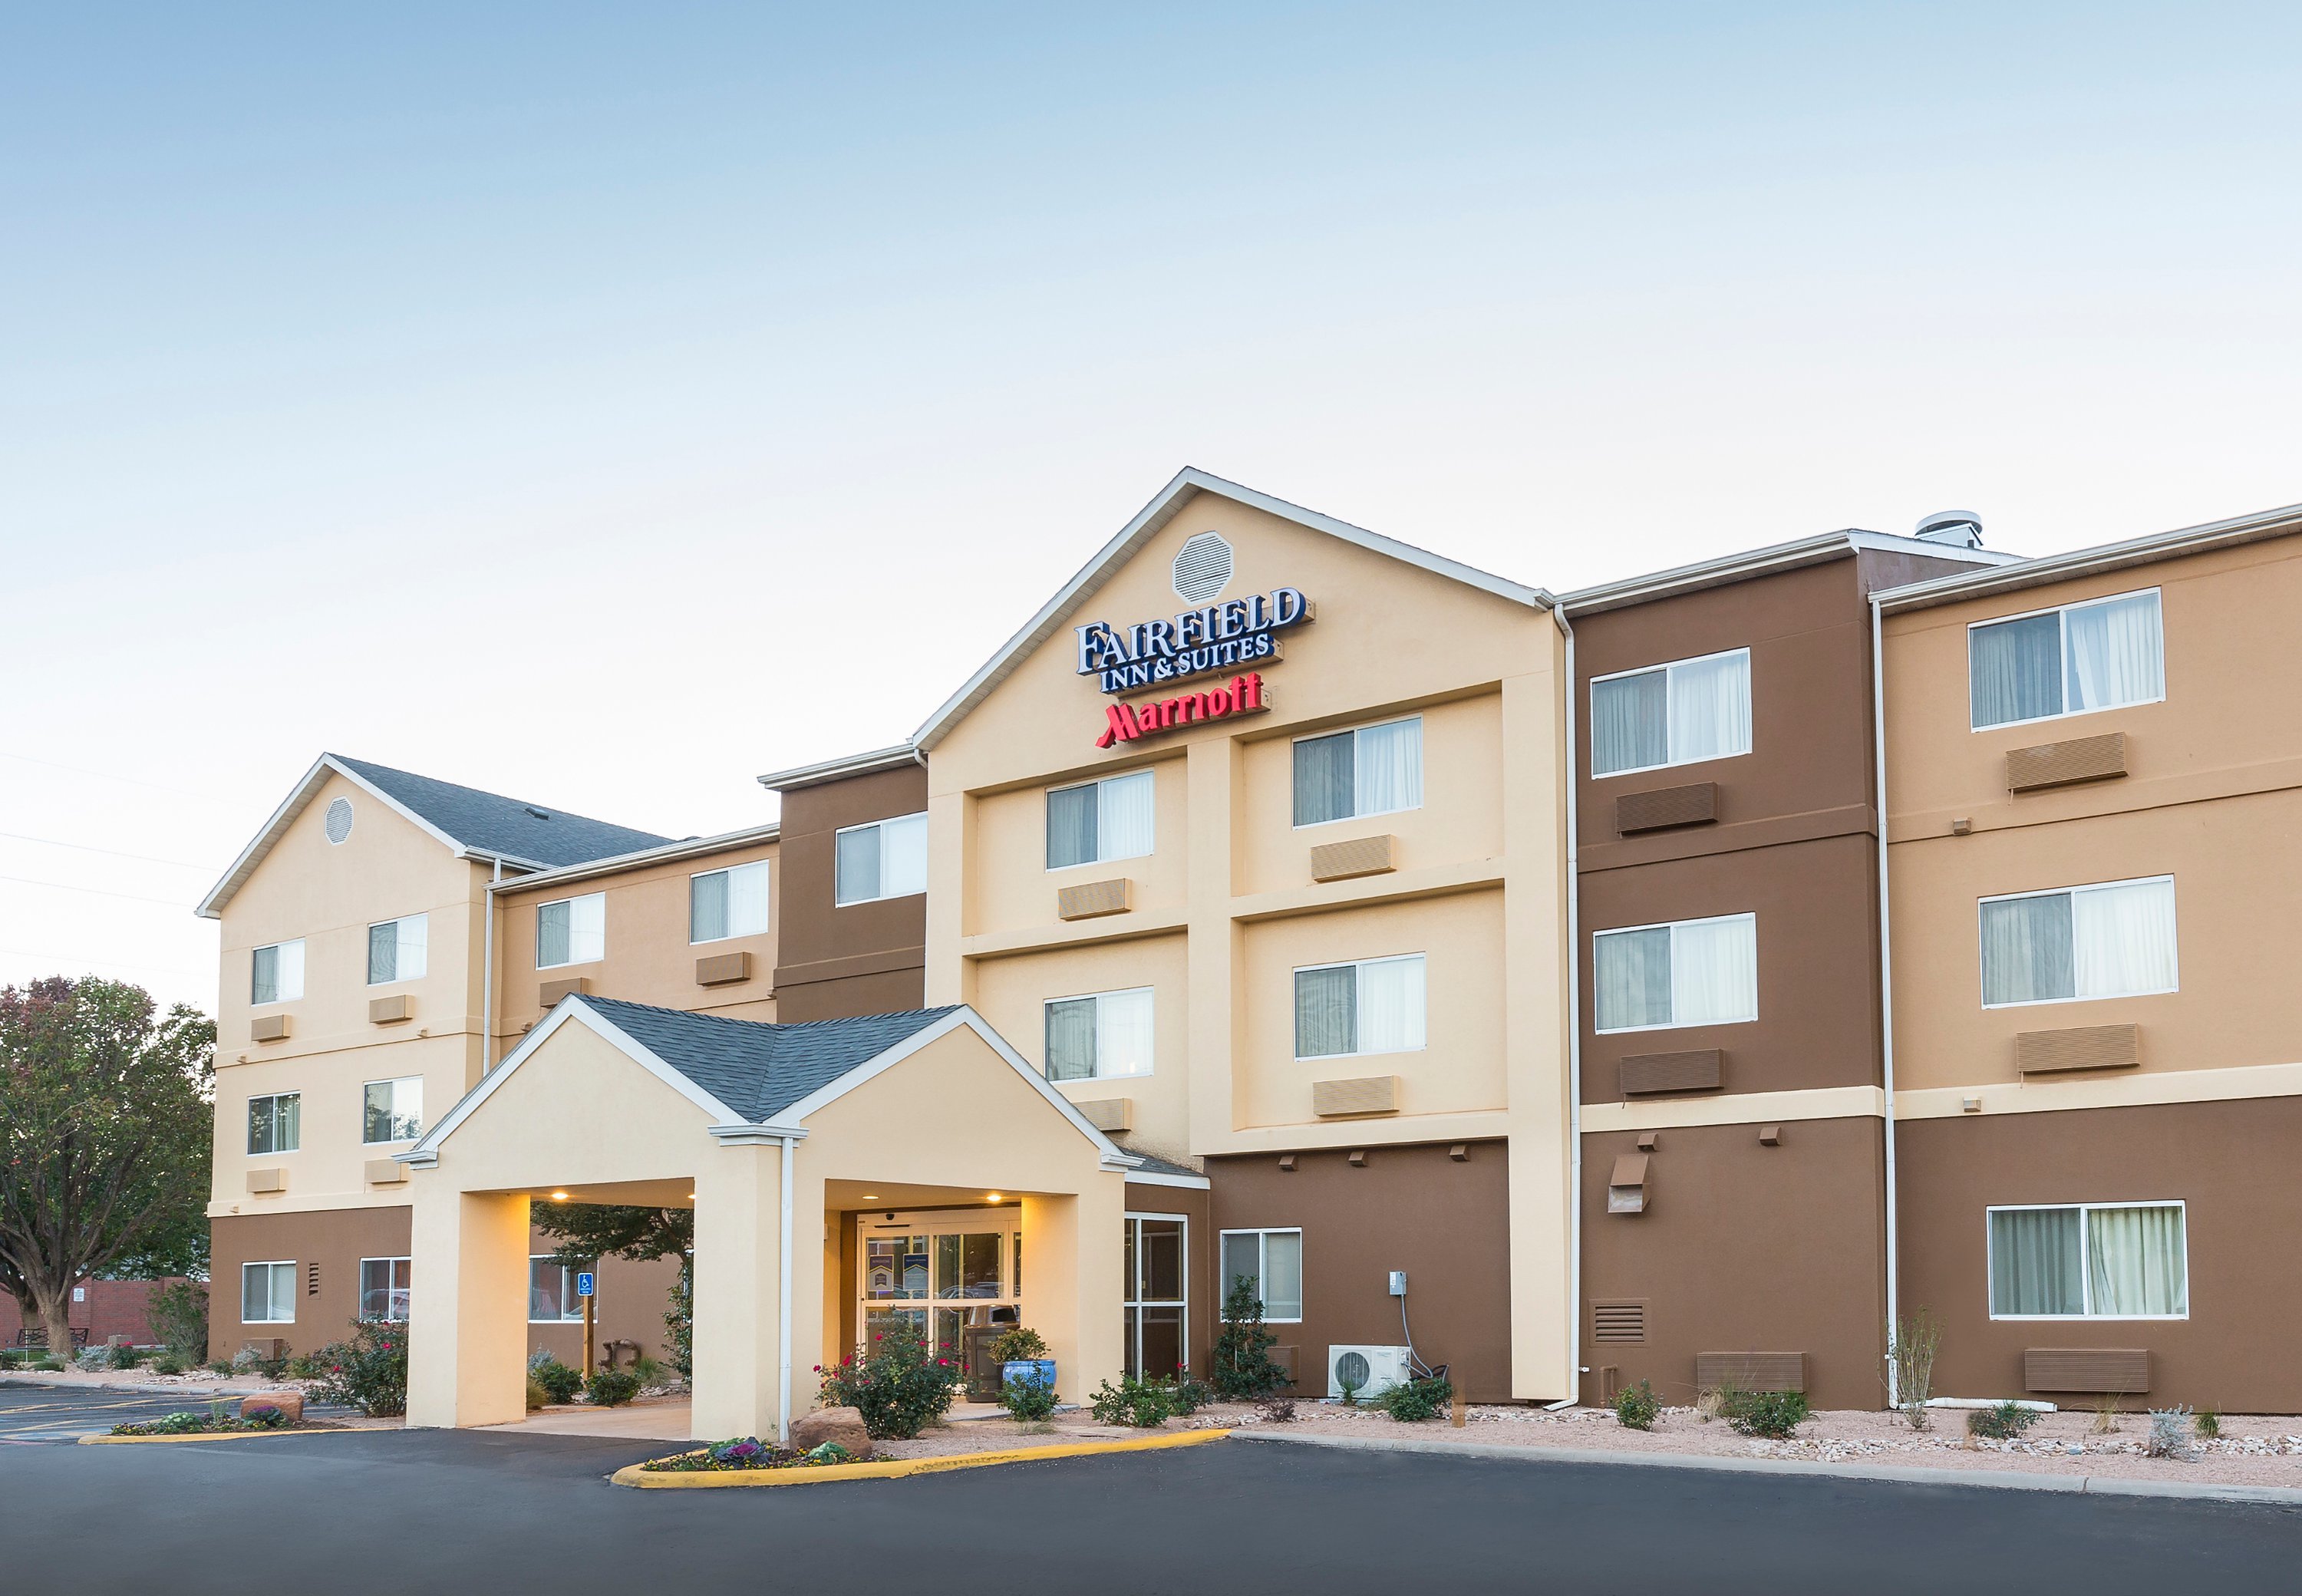 Photo of Fairfield Inn & Suites by Marriott Lubbock, Lubbock, TX